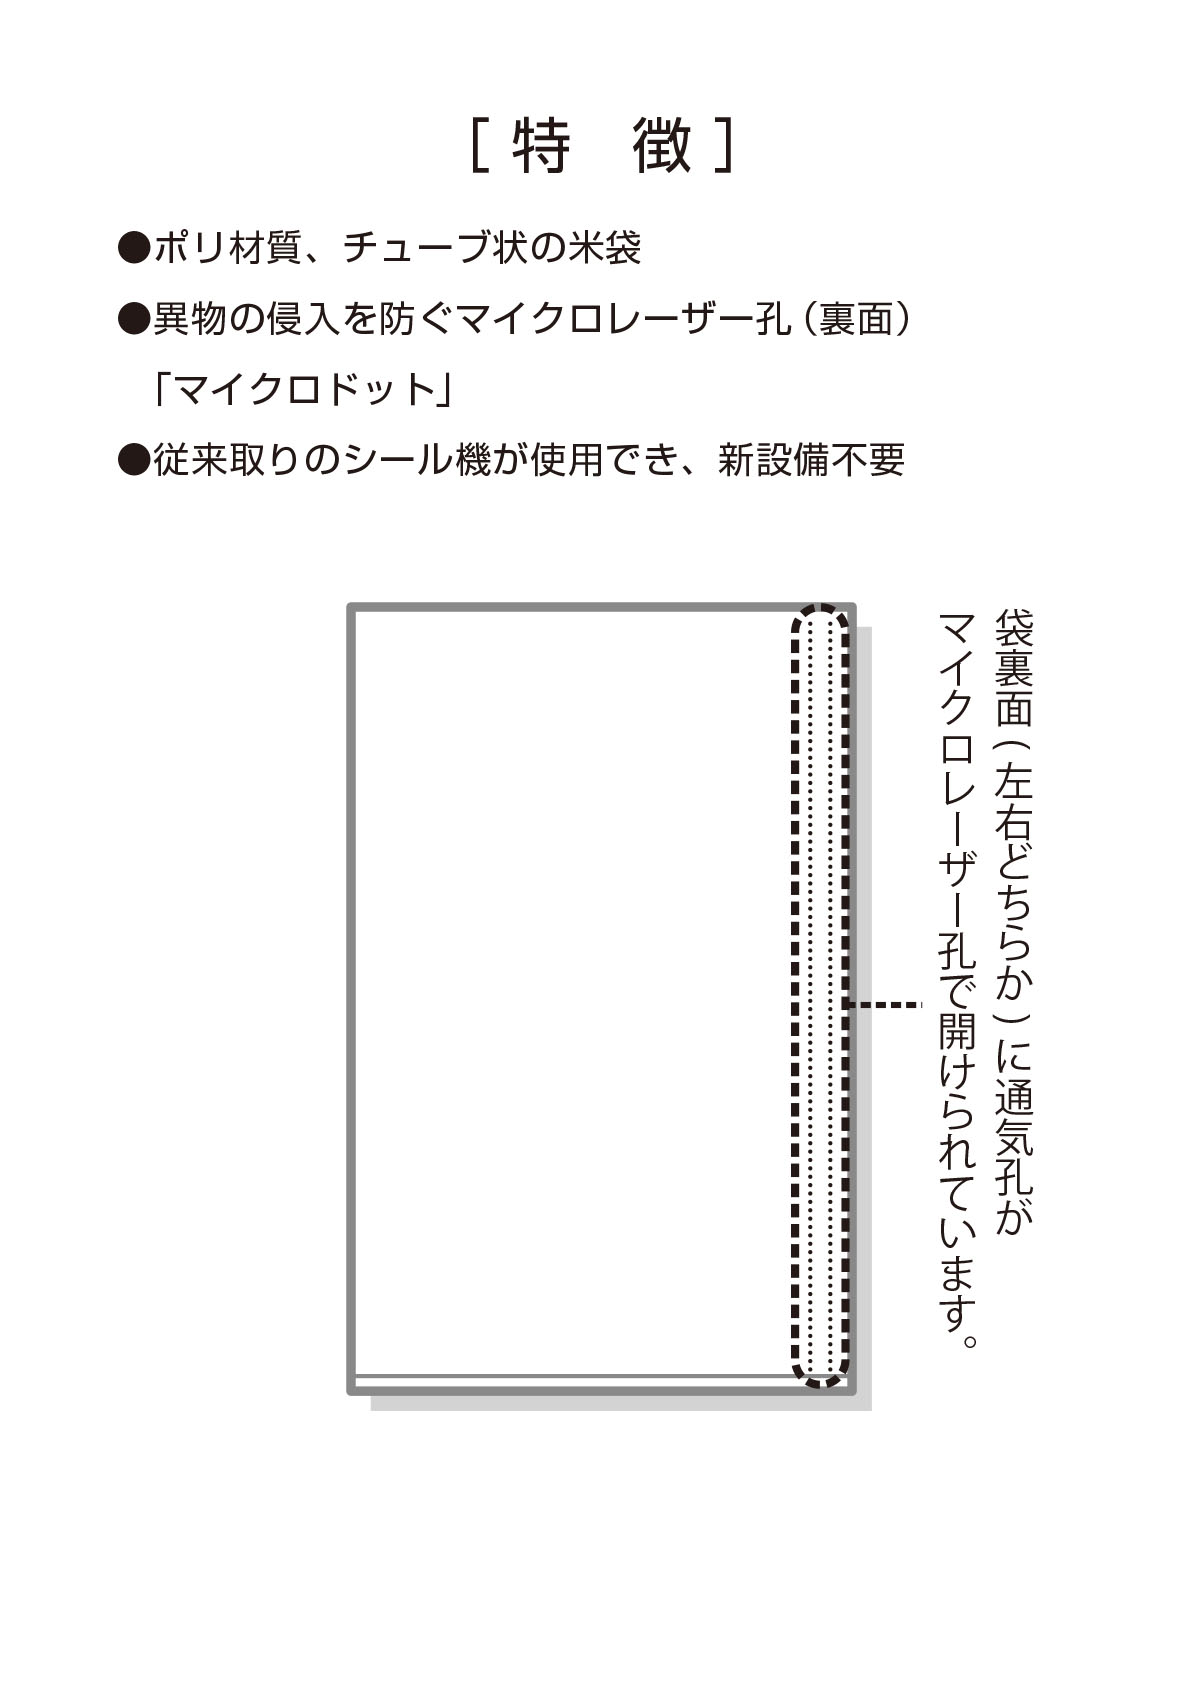 定番 米袋 ポリ乳白 マイクロドット 業務用 米 ＲＩＣＥオレンジ 5kg用 1ケース 500枚入 PD-1220 